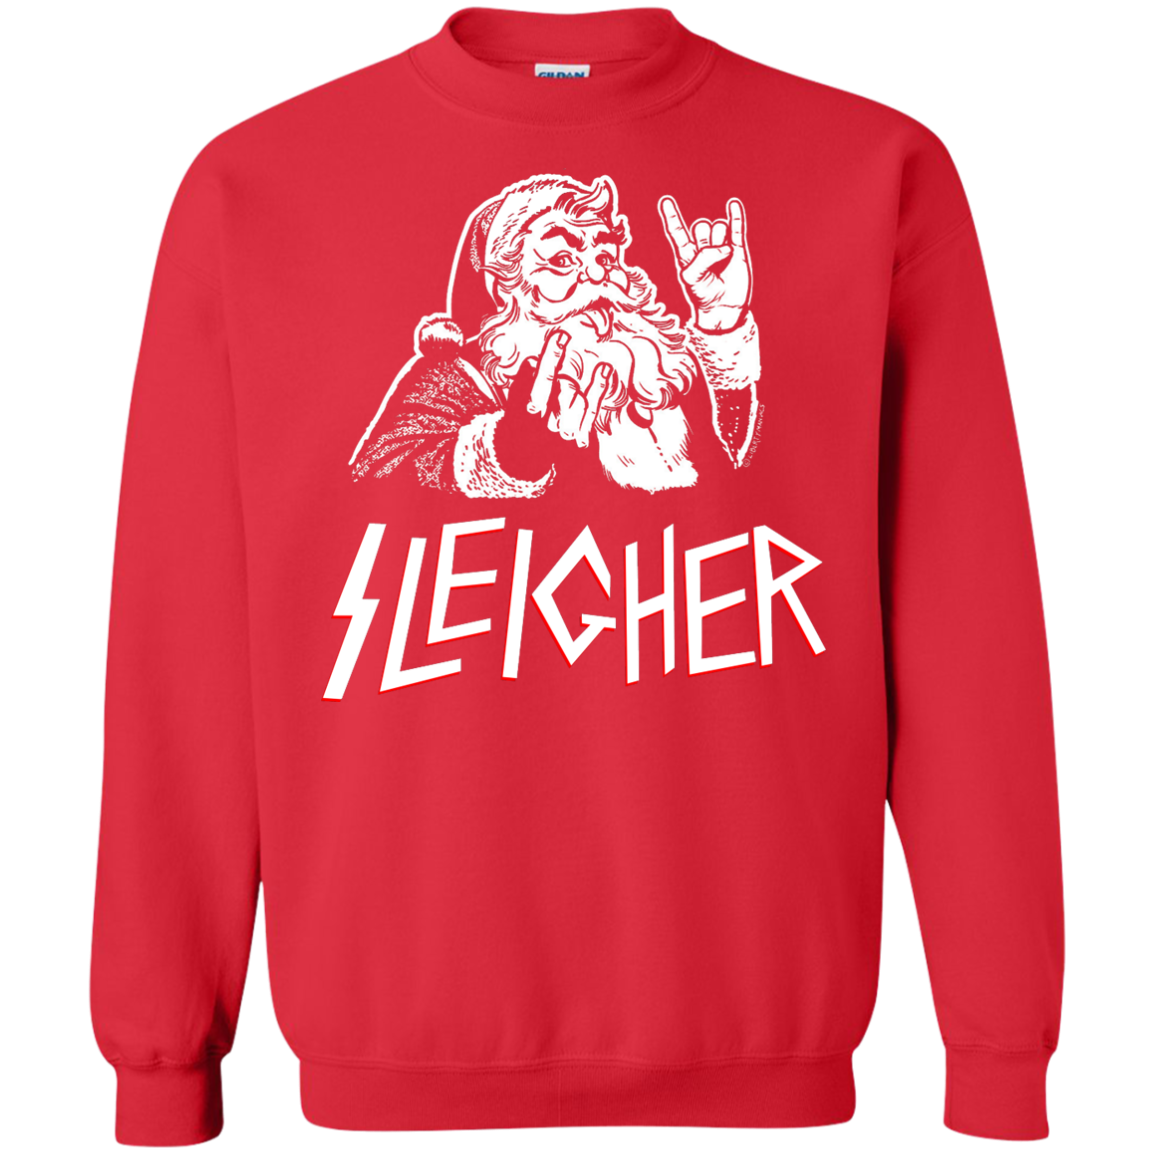 Sleigher Sweatshirt, Metal Santa Christmas Sleigher Sweater, Hoodie